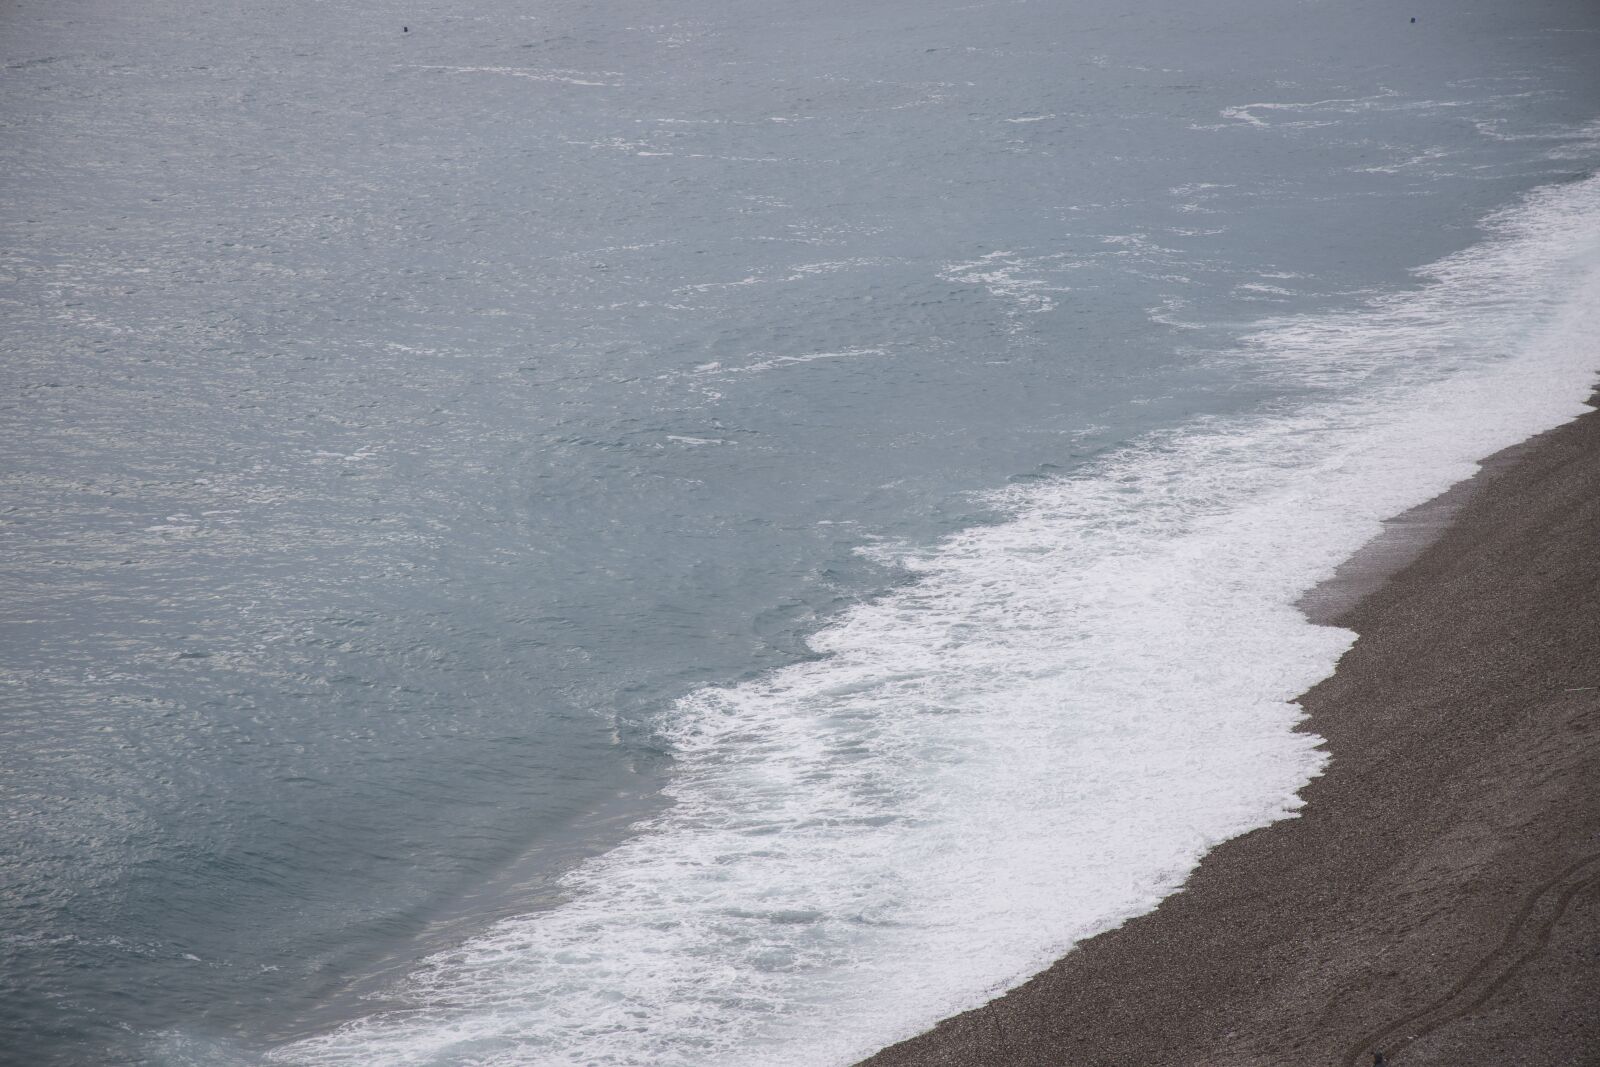 Canon EOS R sample photo. Marine, beach, storm photography